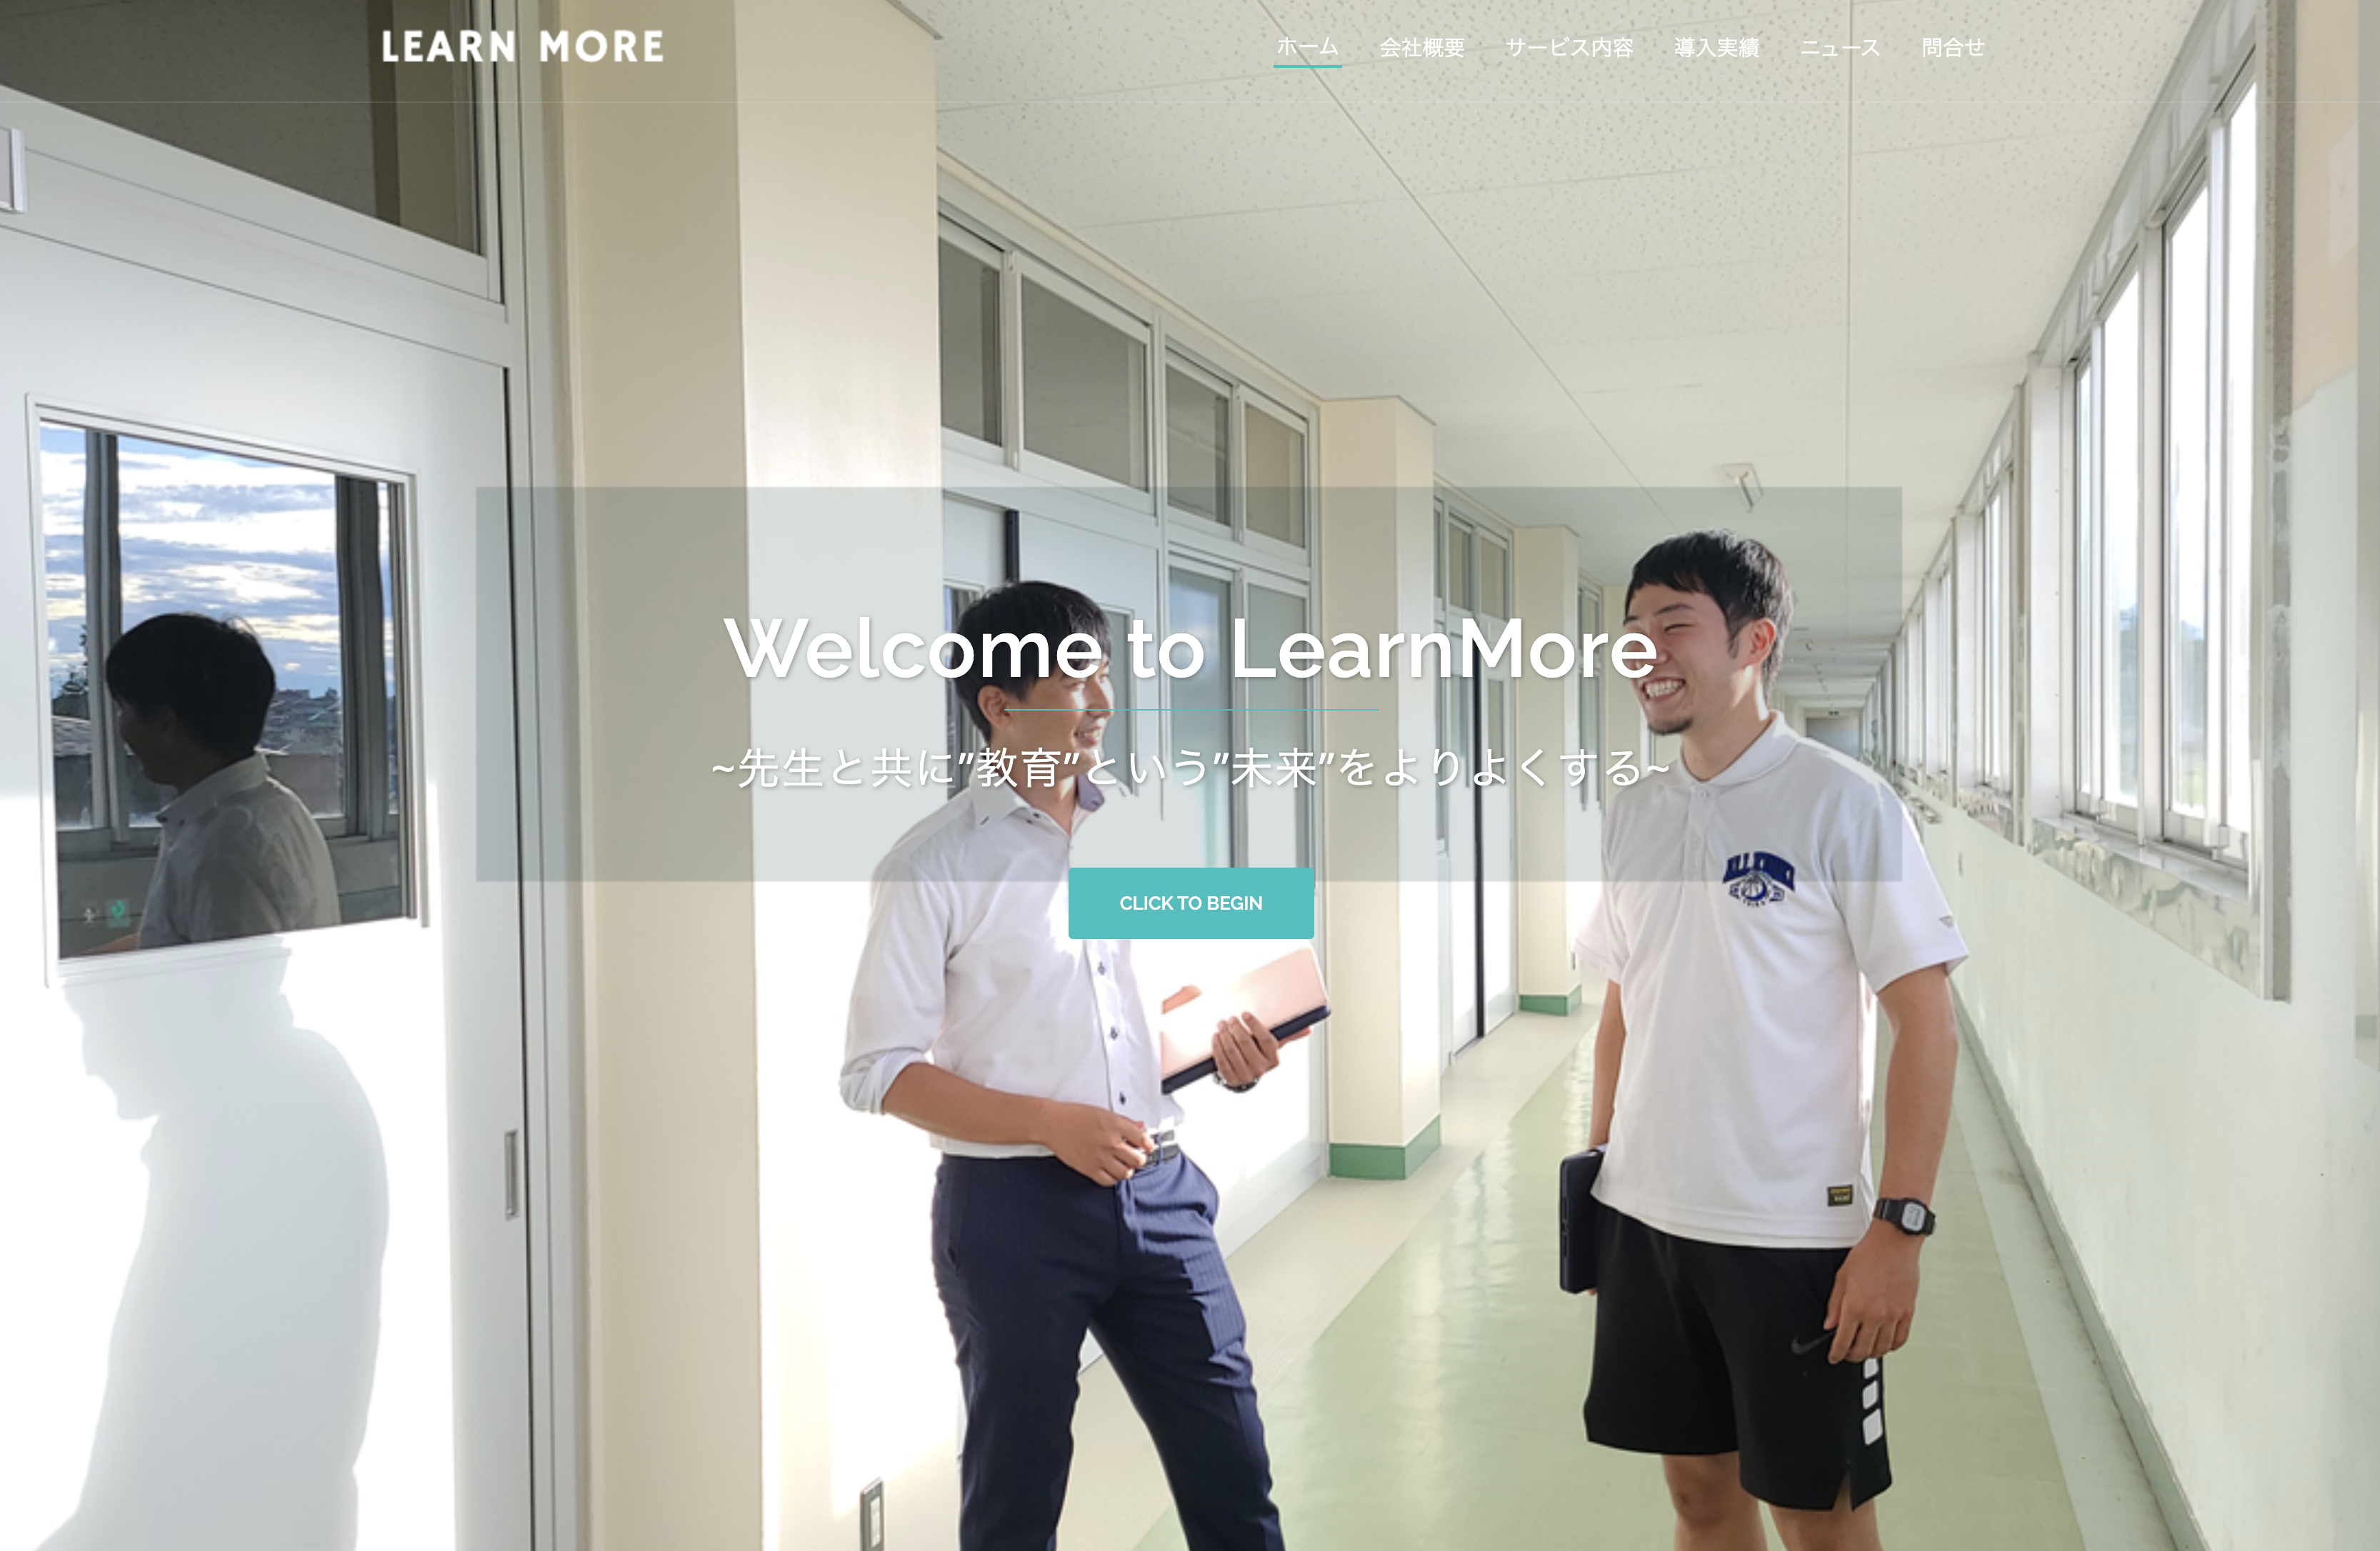 株式会社LearnMoreの株式会社LearnMore:動画制作・映像制作サービス